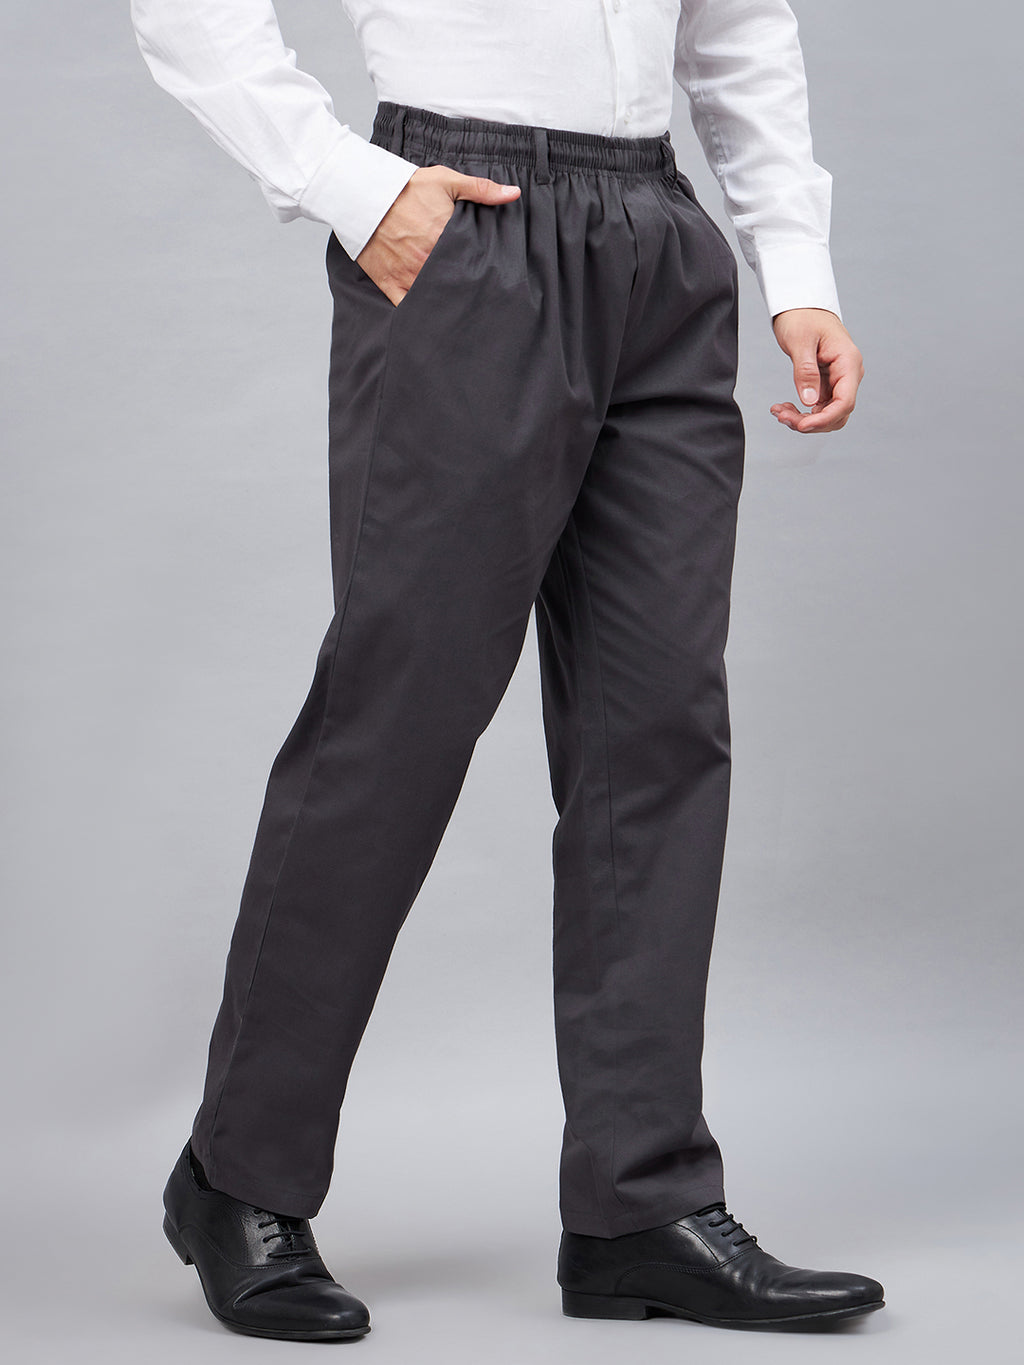 Buy Waist Adjustable Flextech Pants For Men Online In India